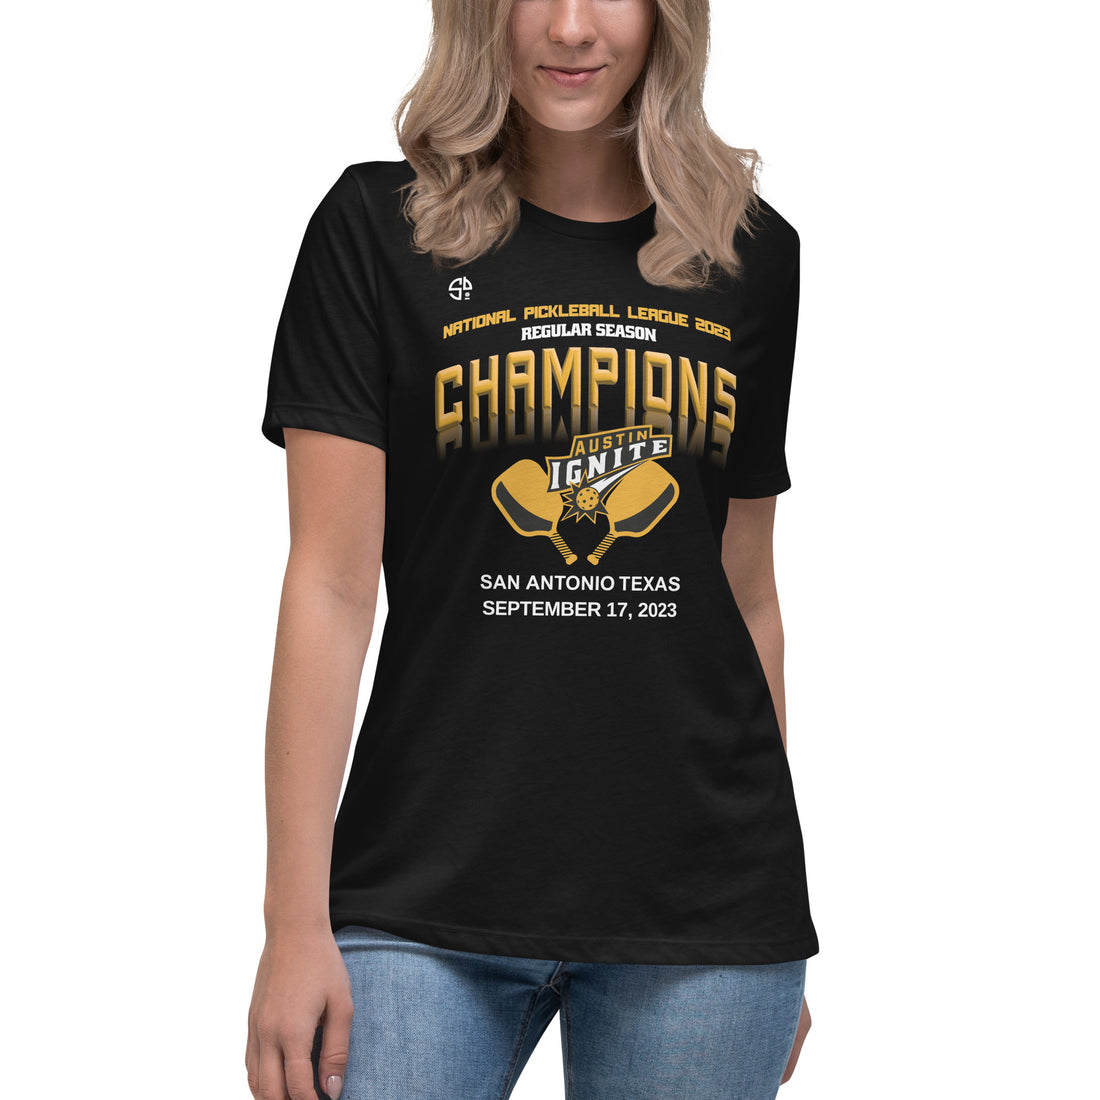 Austin Ignite™ NPL™ Regular Season Pickleball Championship Fan Shirt for Women